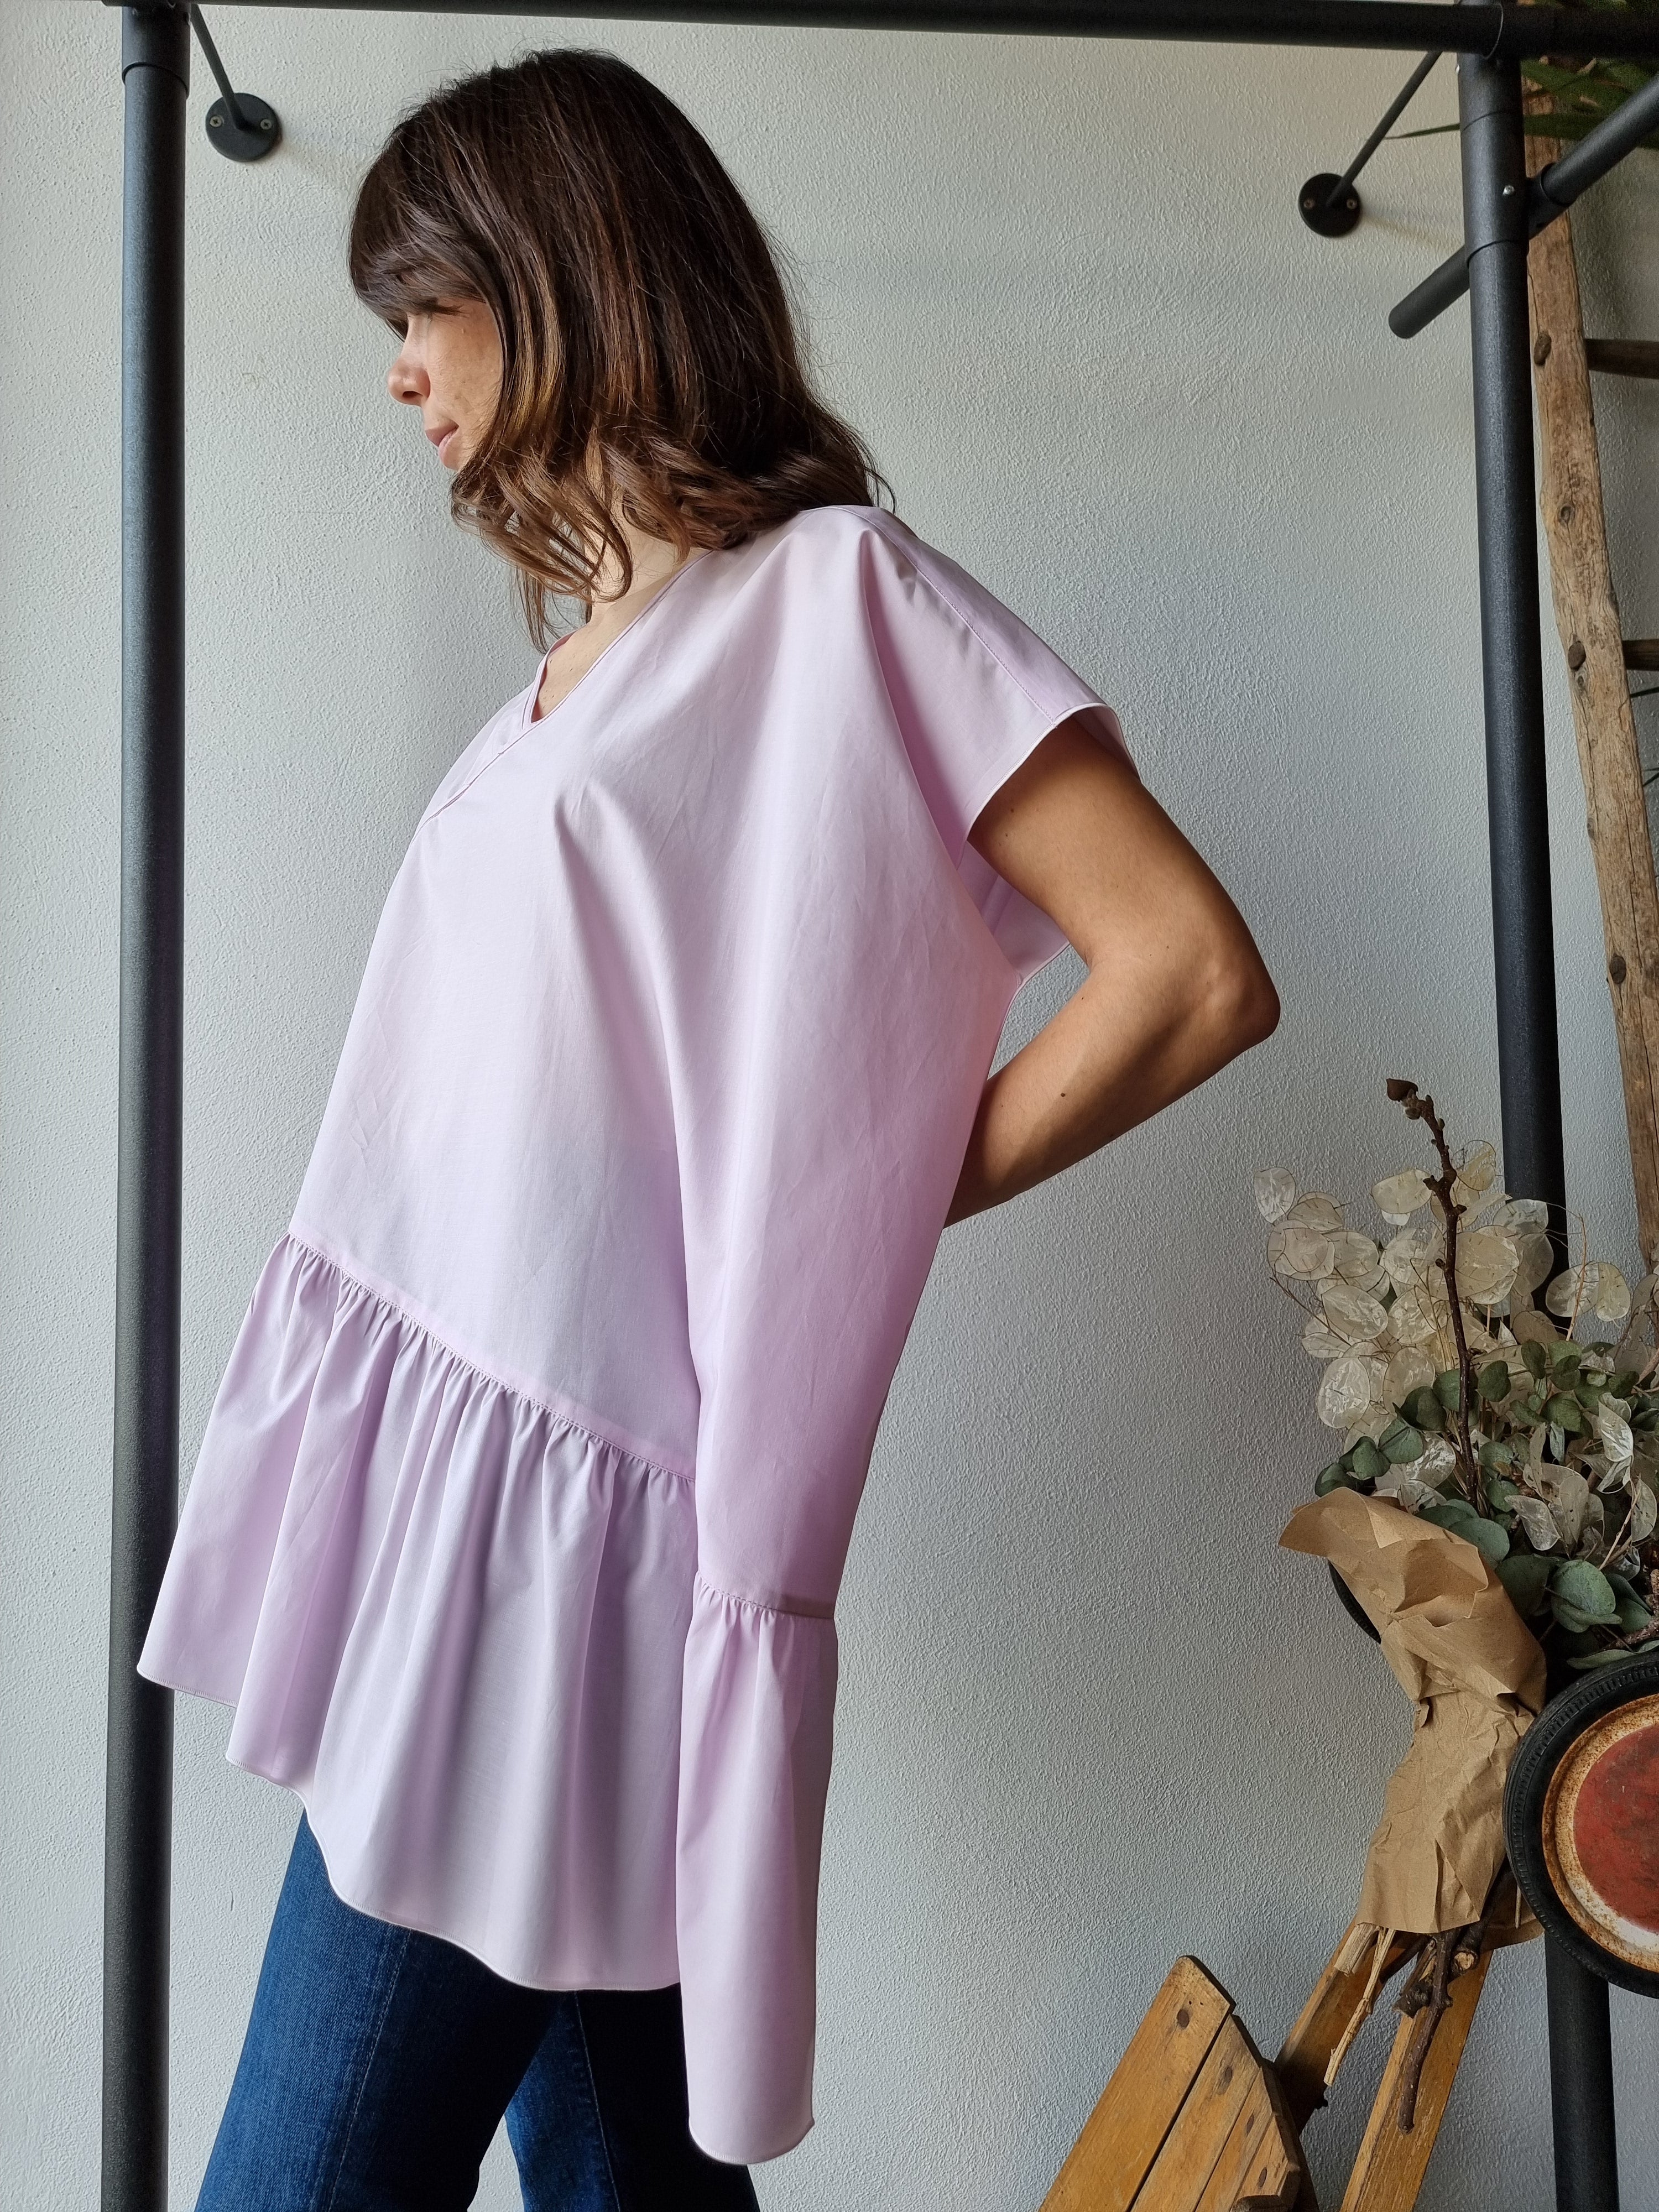 Aquilano Rimondi – Camicia asimmetrica rosa